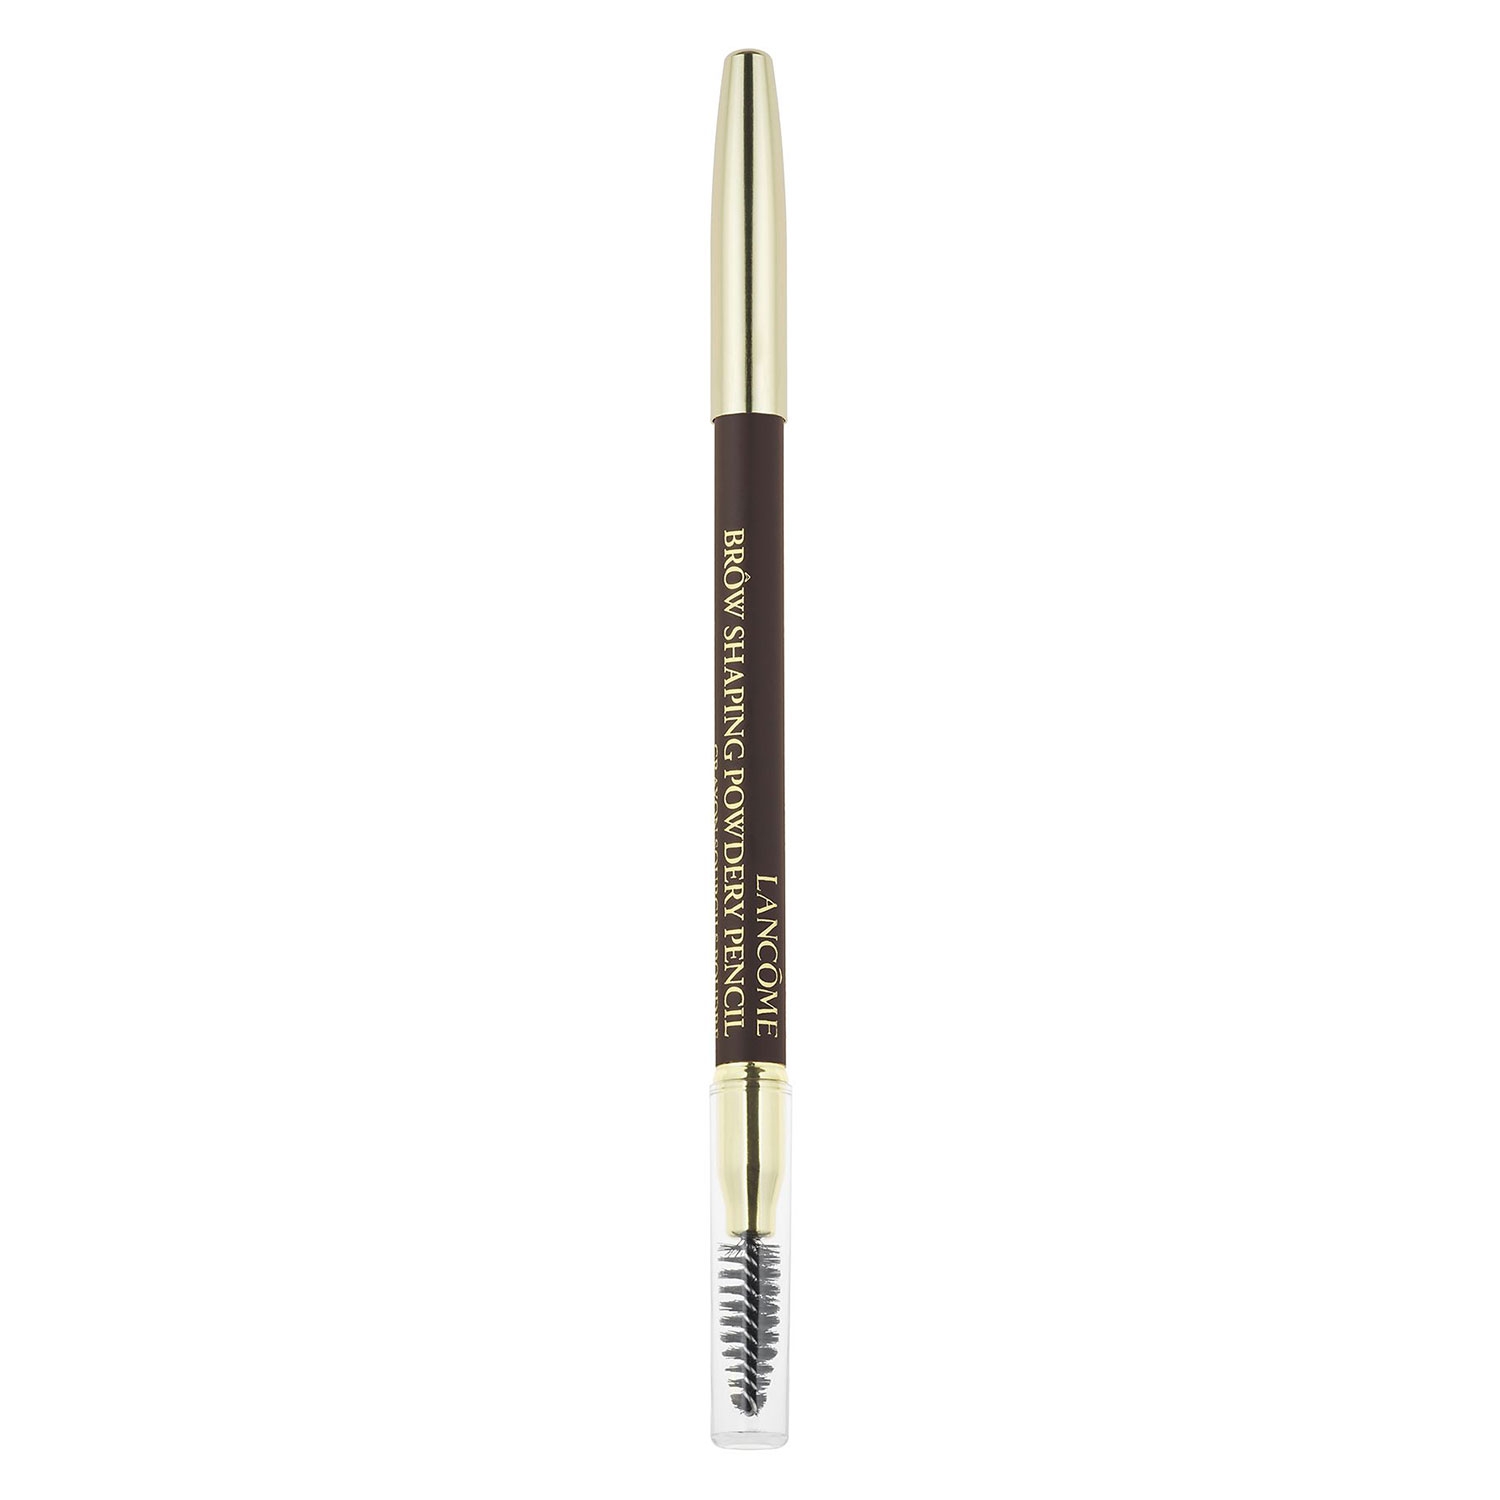 Produktbild von Lancôme Brows - Brow Shaping Powdery Pencil Dark Brown 08